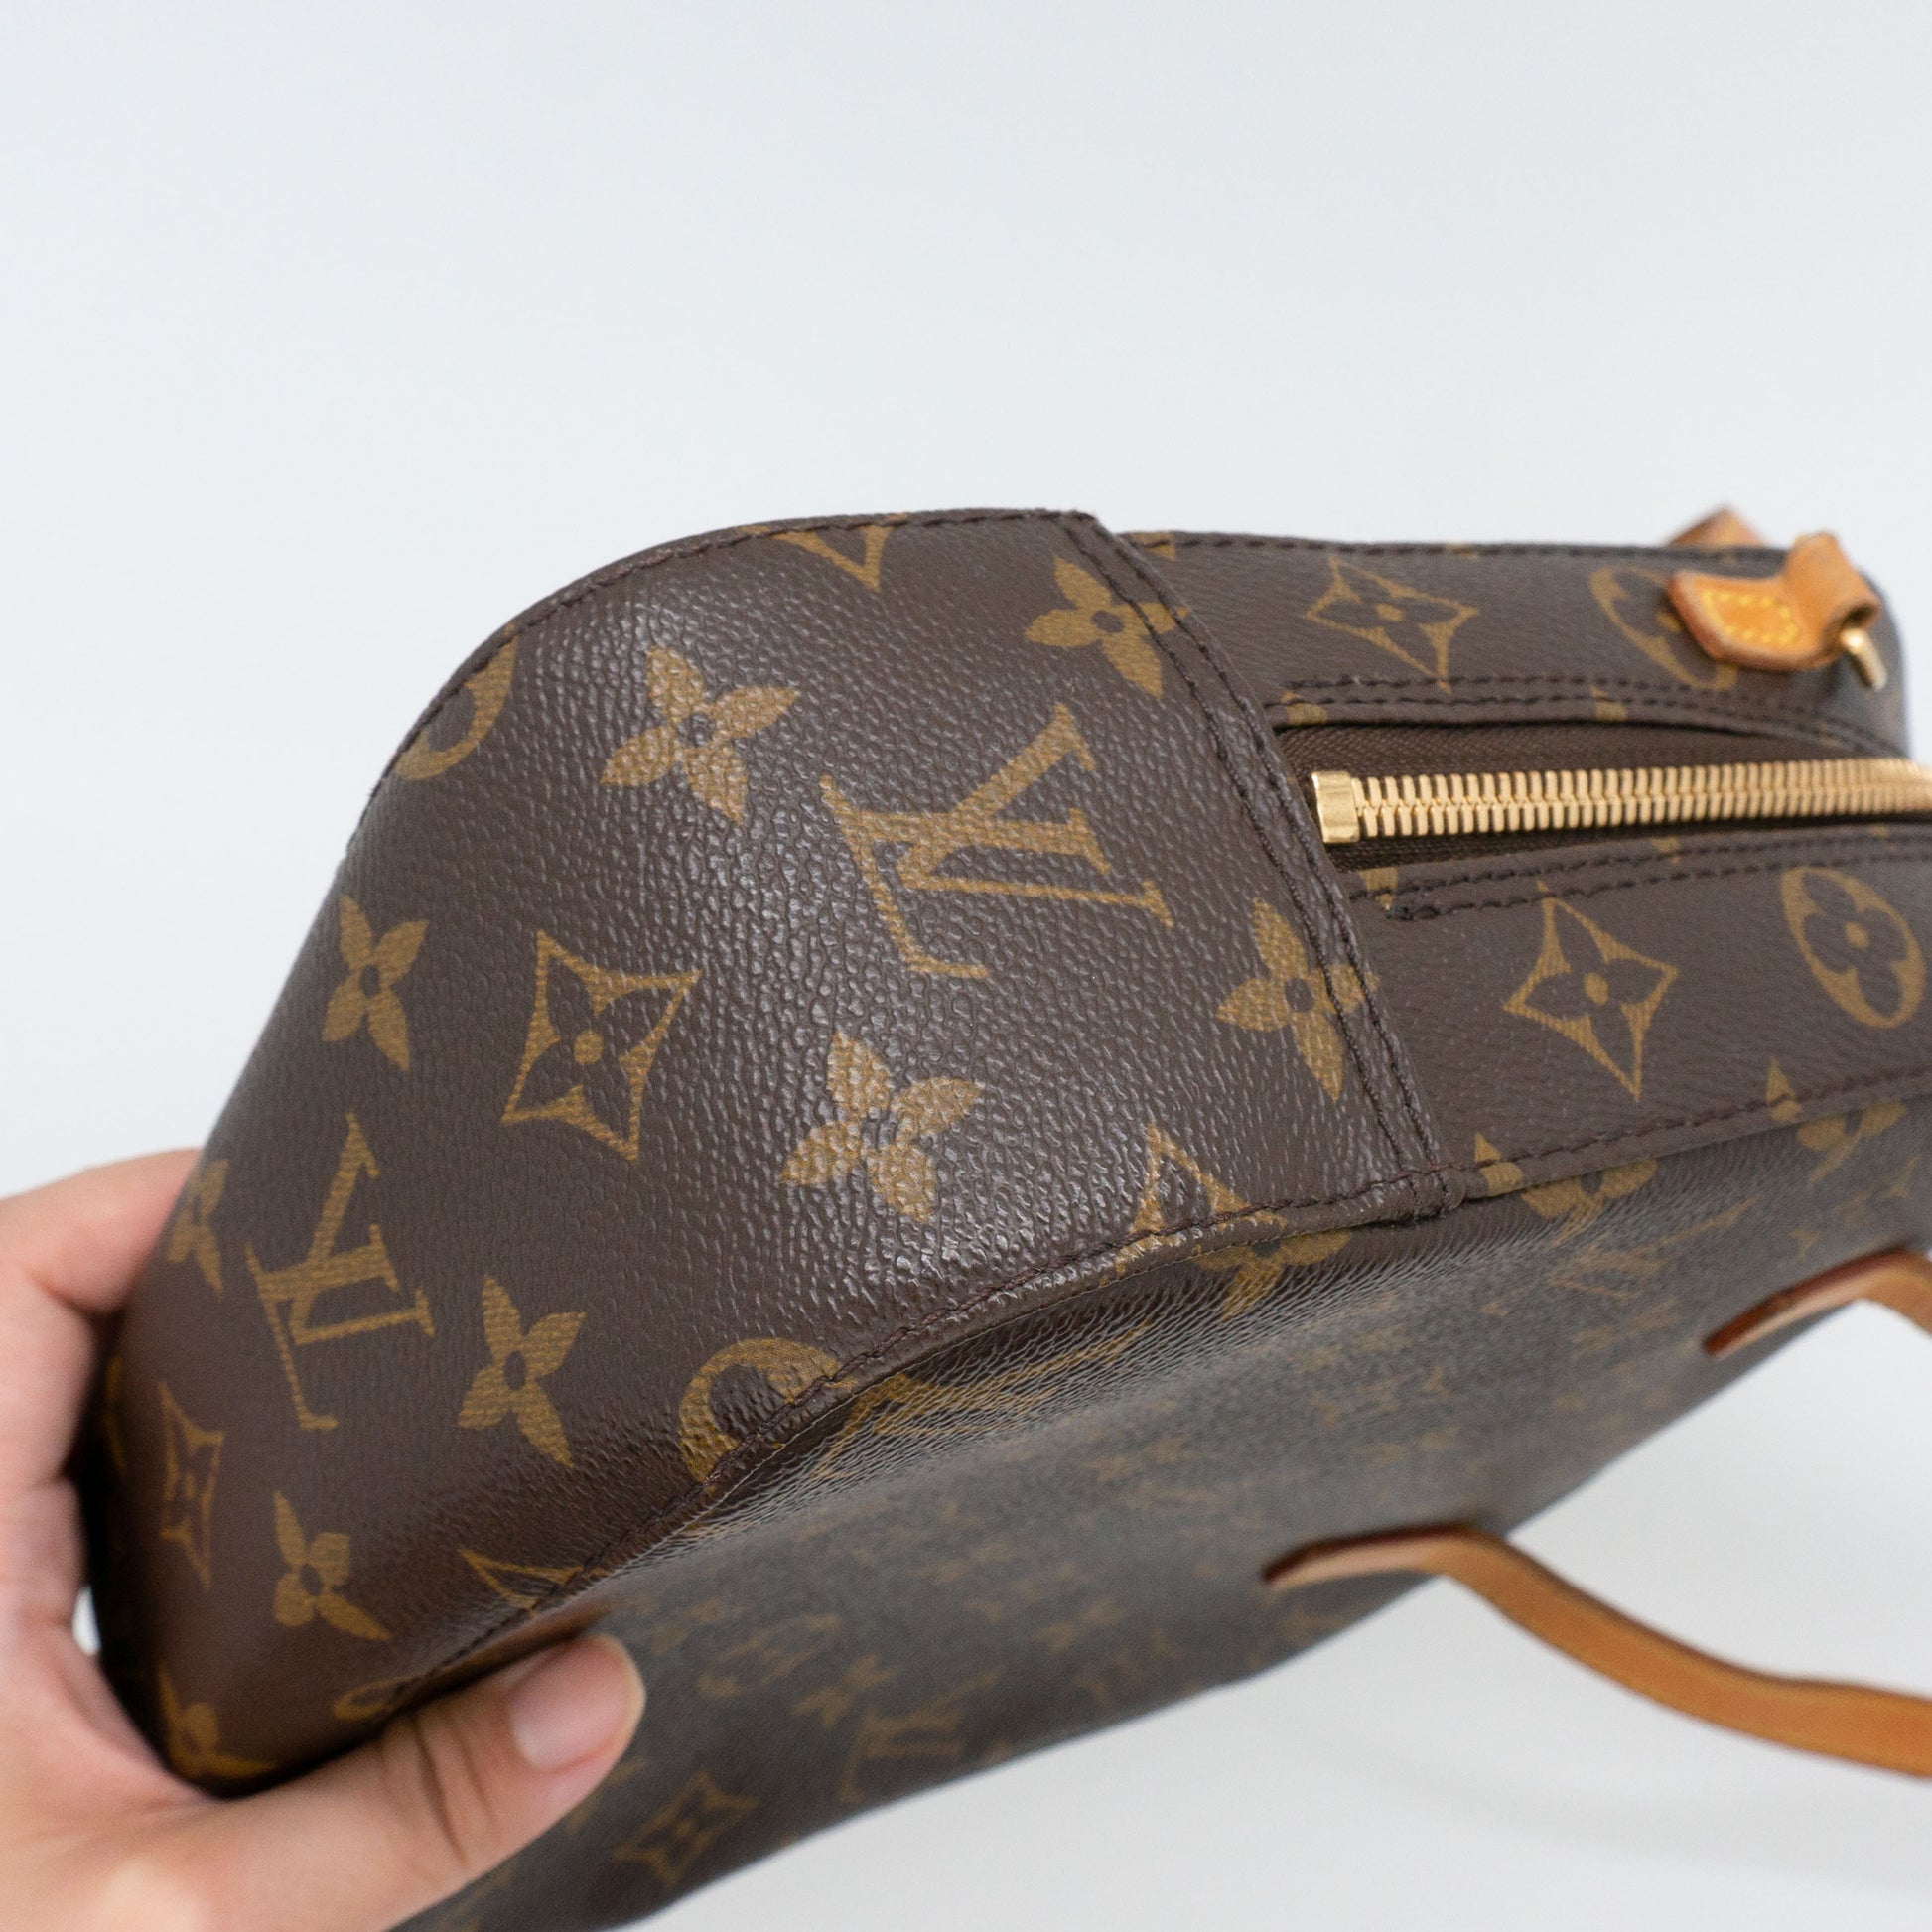 Louis Vuitton Spontini Handbag 356687